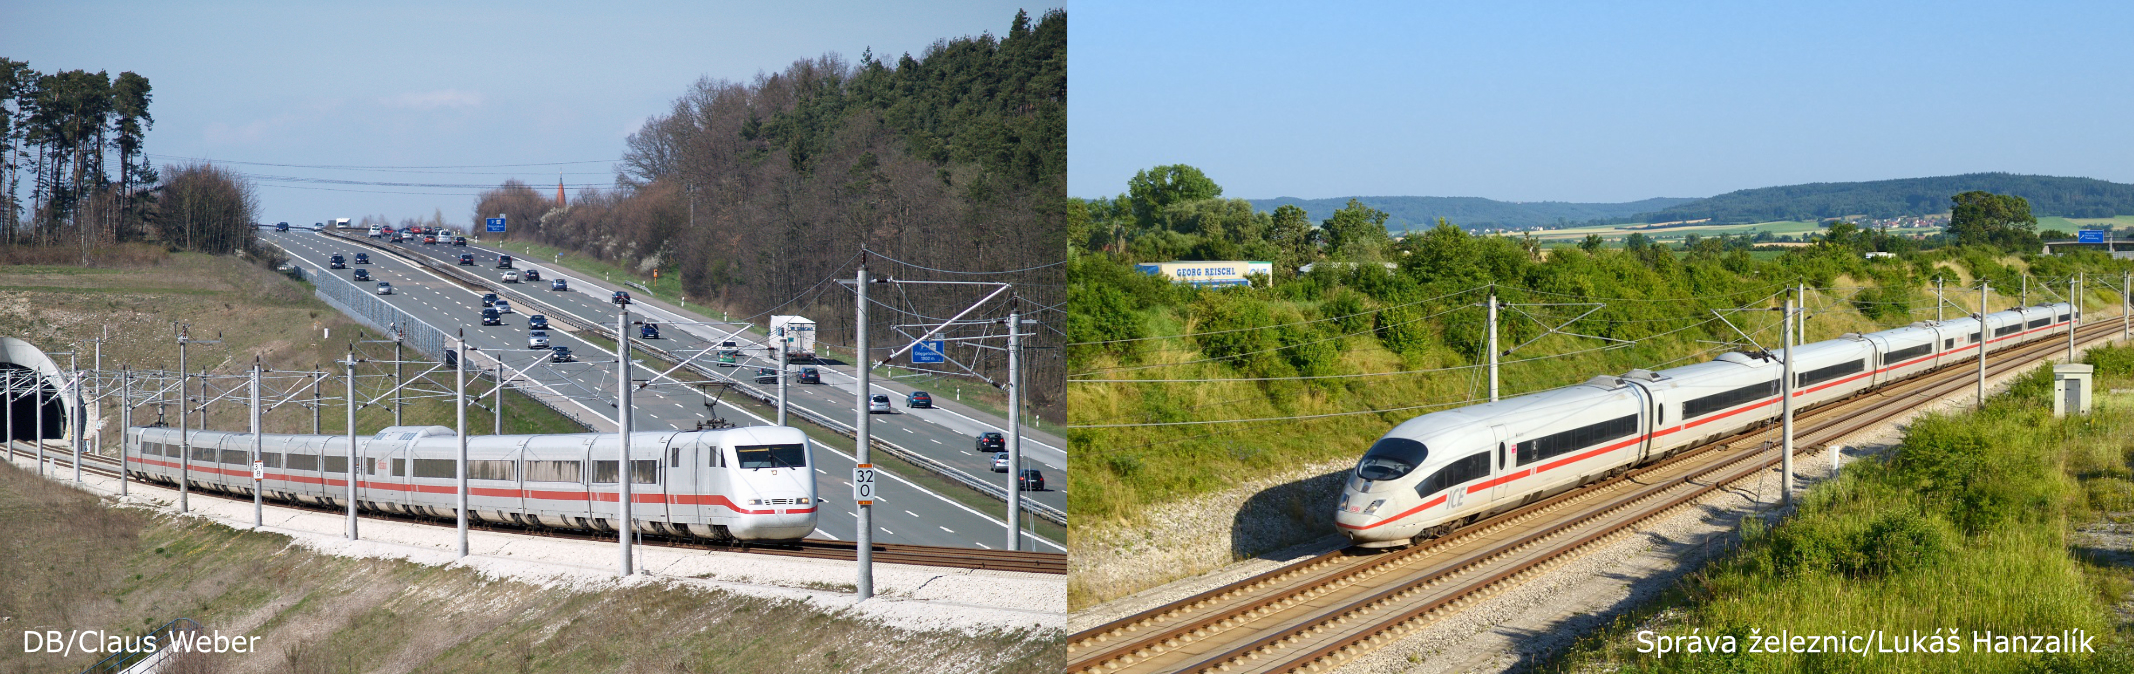 Vysokorychlostní vlaky z Německa